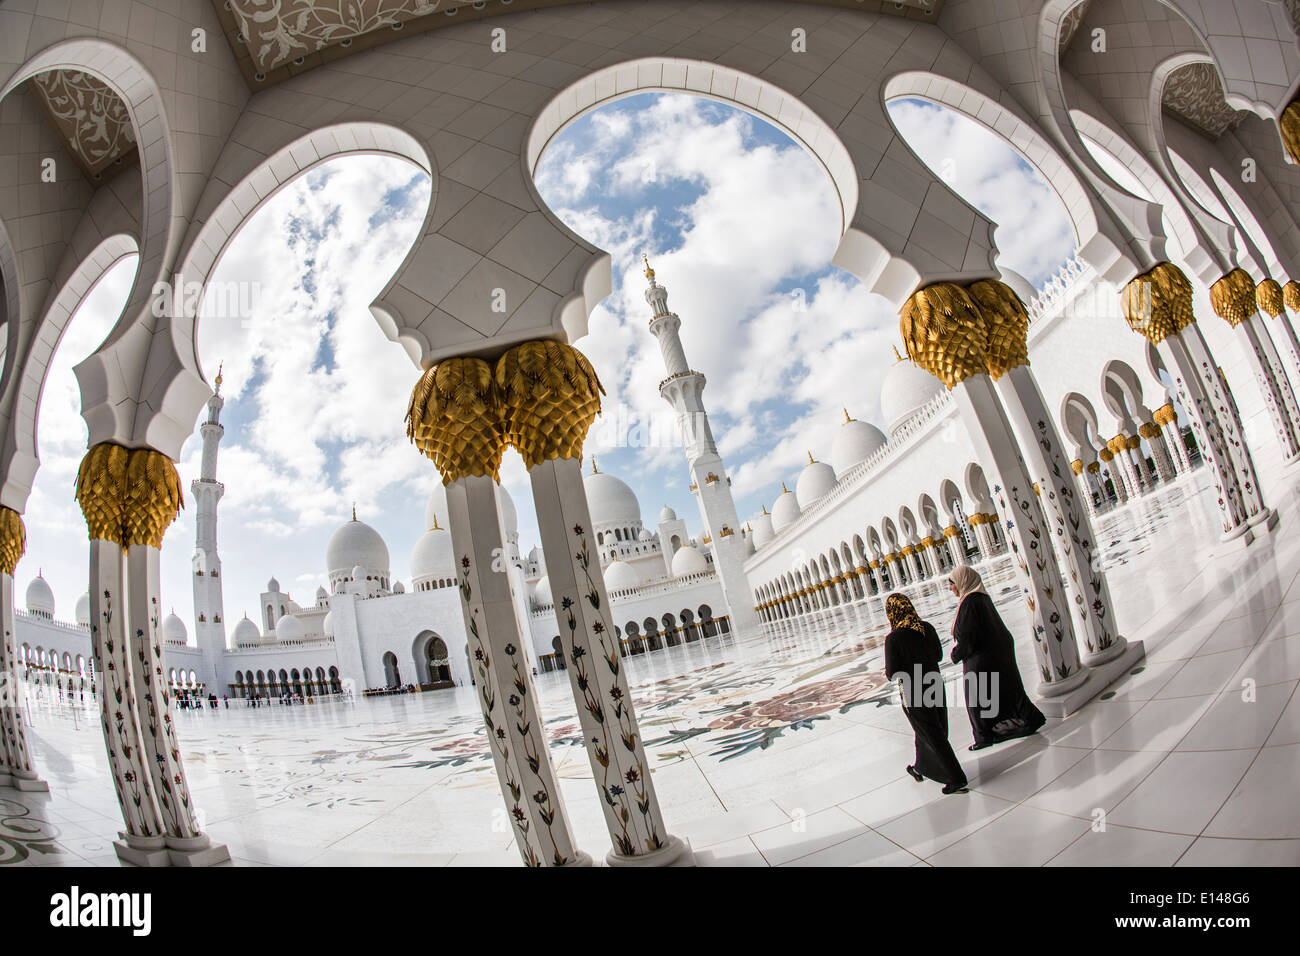 Emirats arabes unis, Abu Dhabi, Grande Mosquée de Sheikh Zayed. Deux femmes vont à la prière Banque D'Images